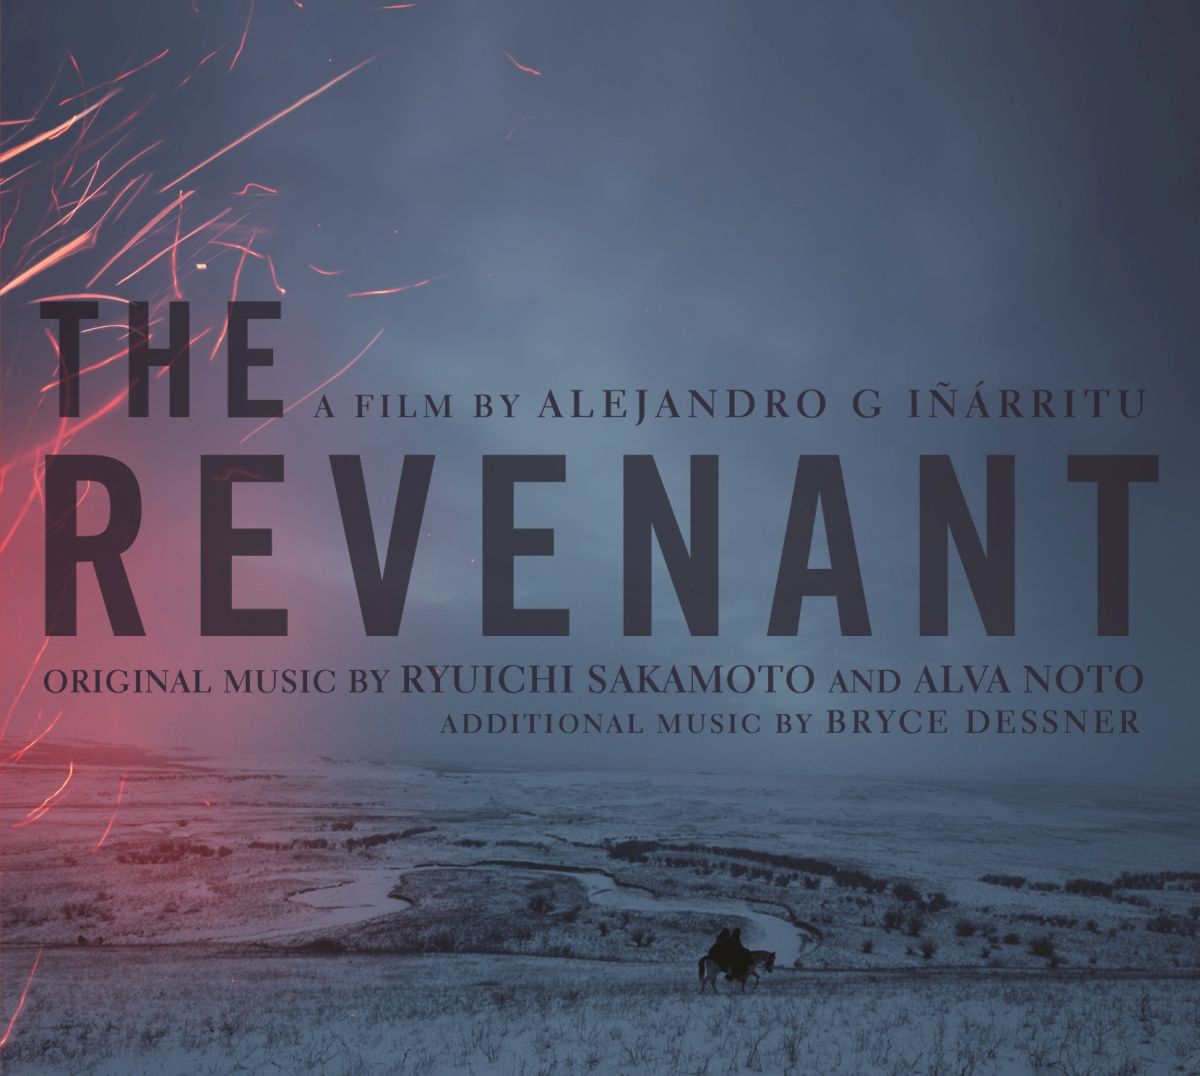 オリジナル・サウンドトラック盤「The Revenant（蘇えりし者）」